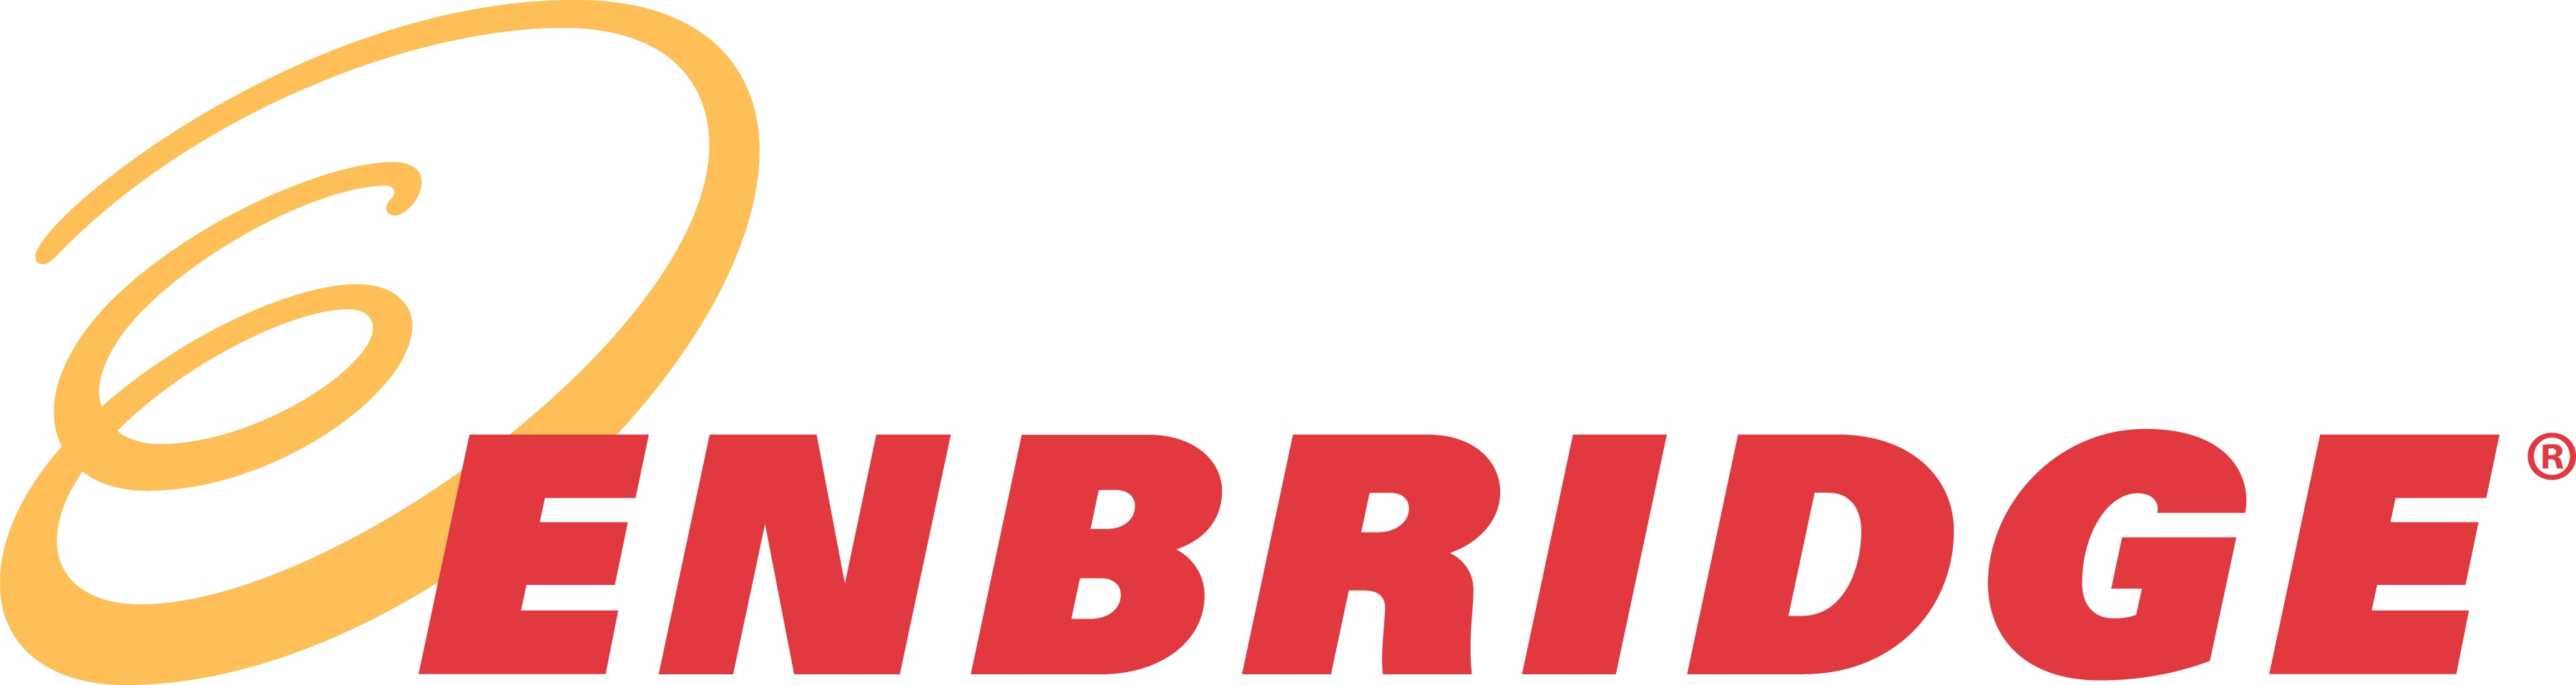 Enbridge Energy Partners Company Logo